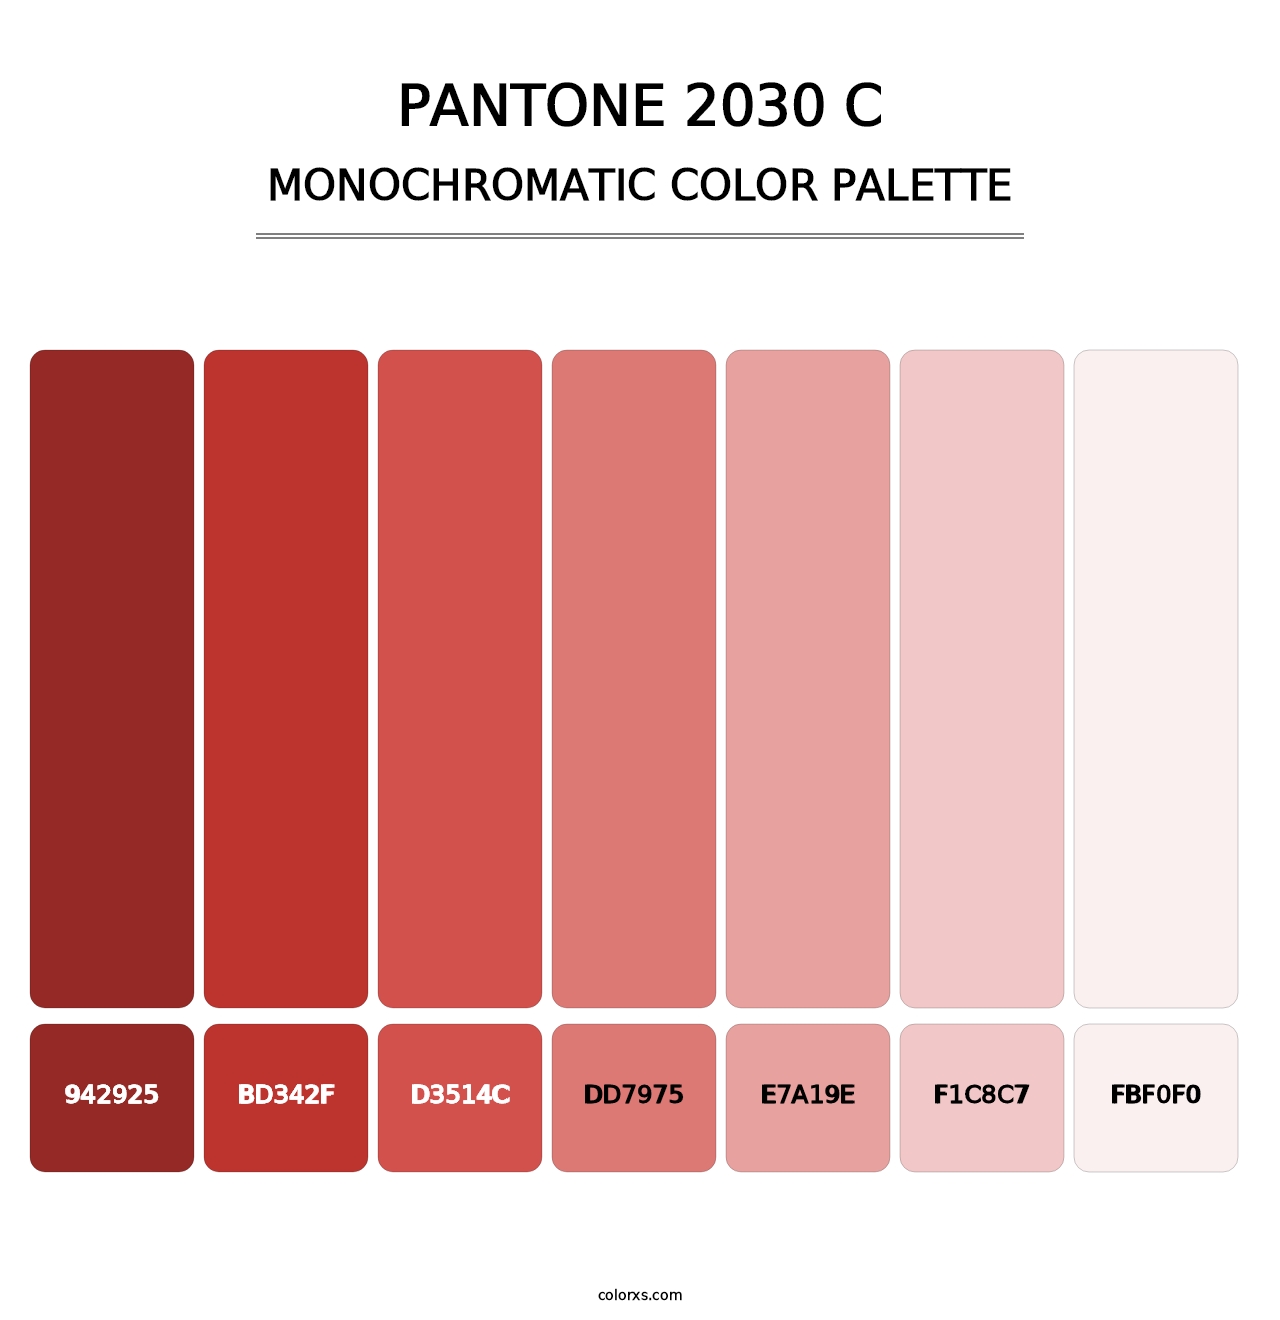 PANTONE 2030 C - Monochromatic Color Palette